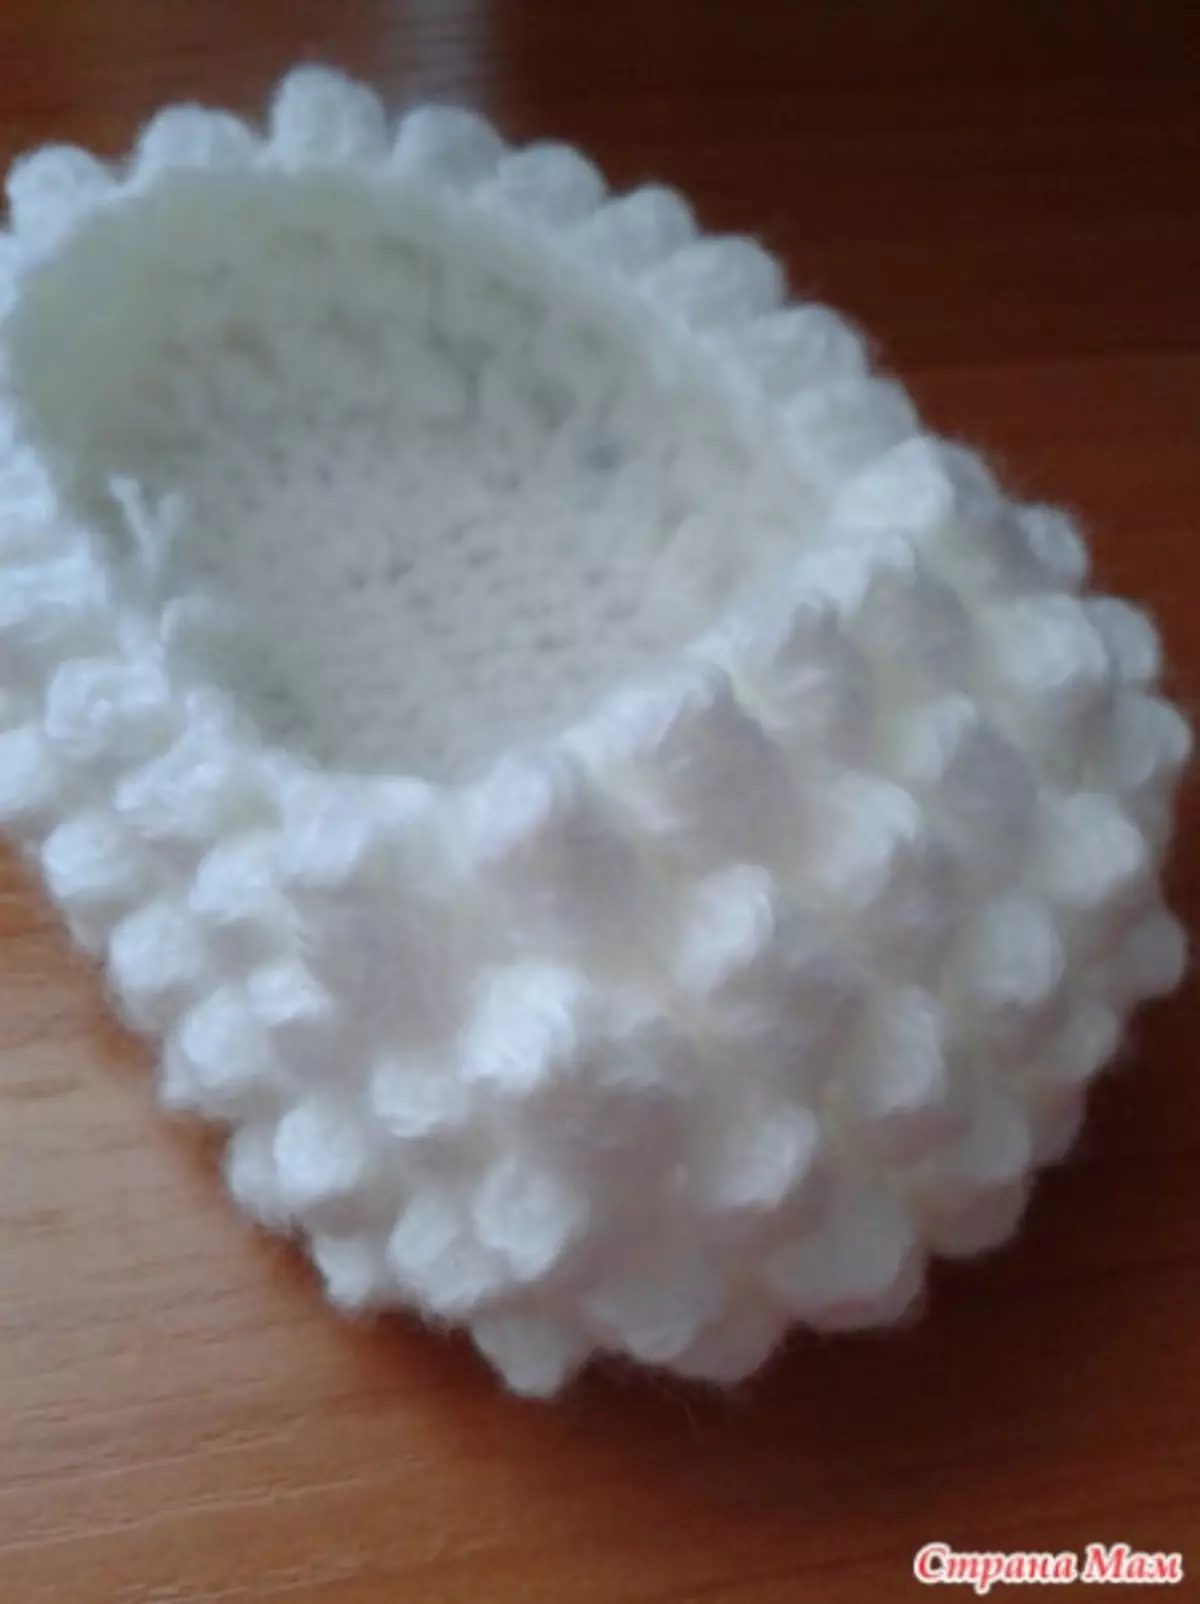 Boty-Lamb Crochet: Esquemas com descrição e vídeo